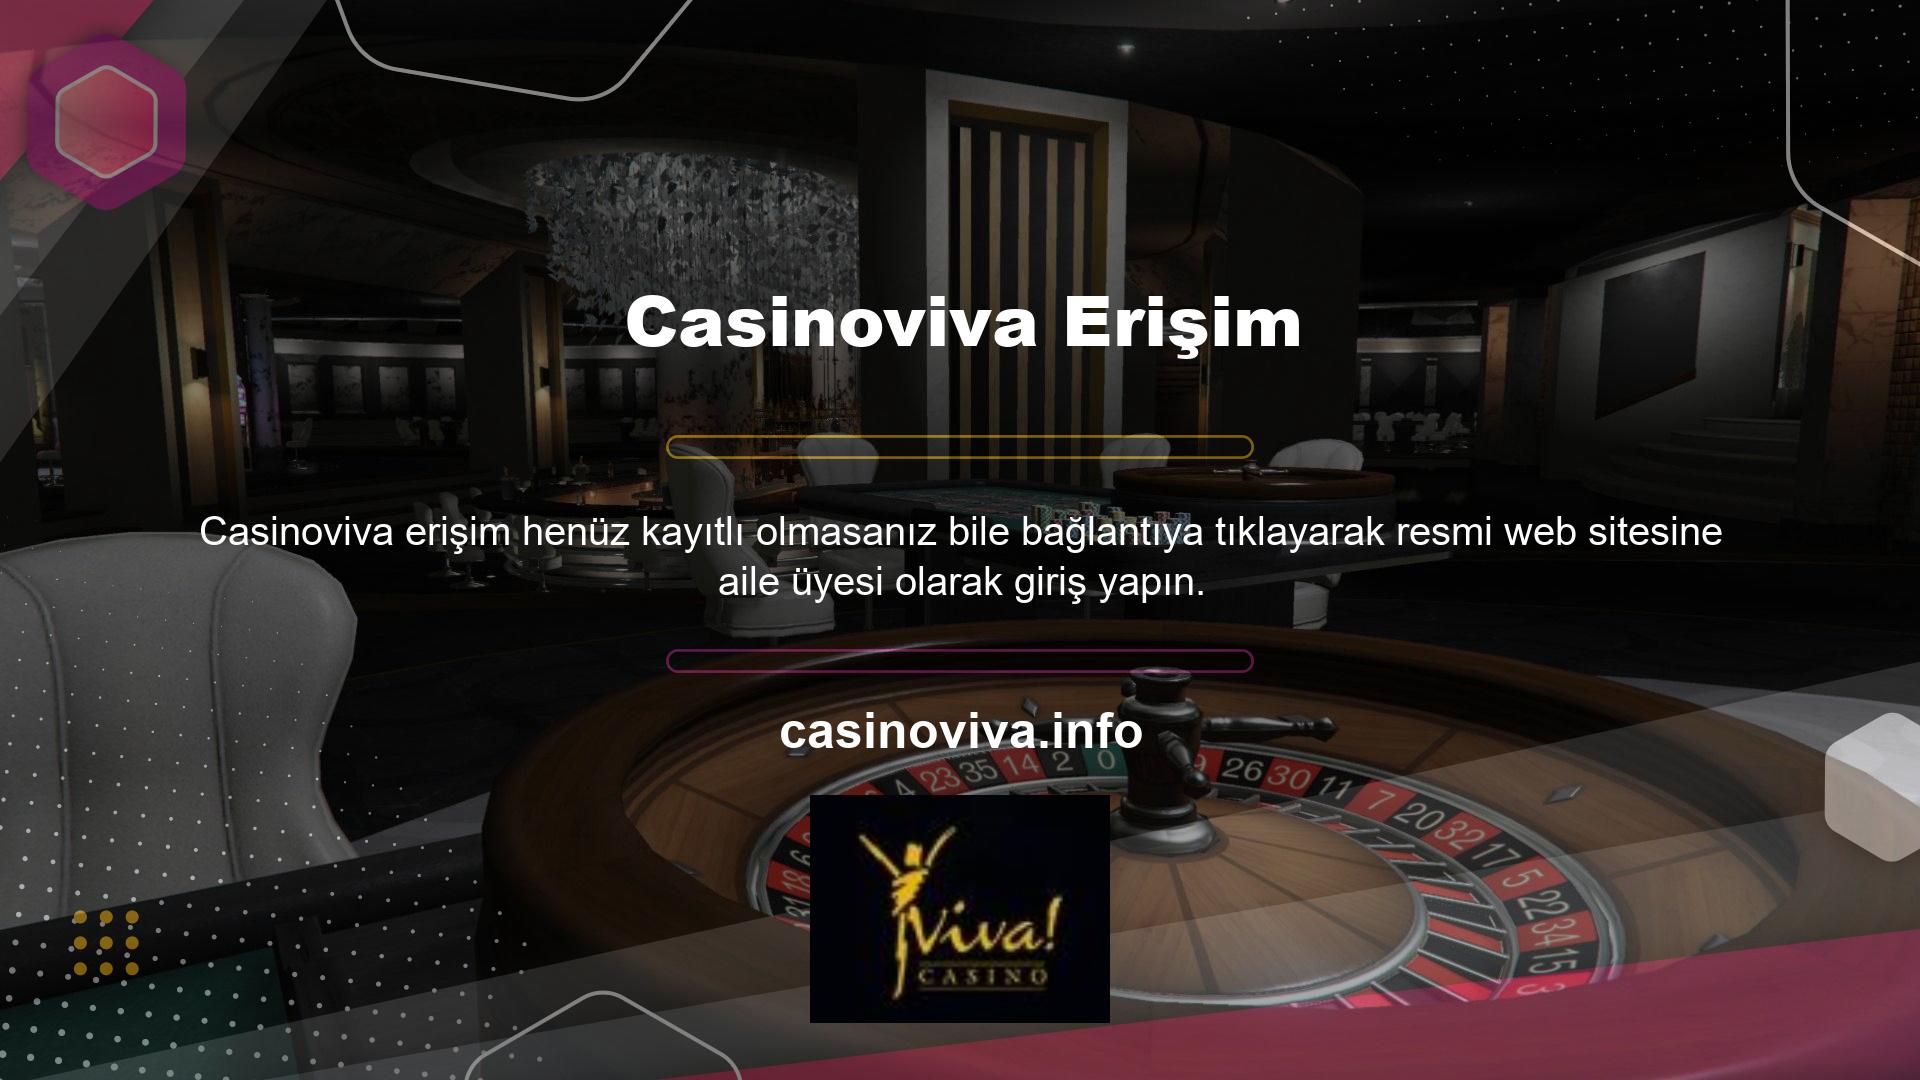 Casinoviva kapatılmasının ardından açtığı dava feshedilerek yeni alan adları devredildi